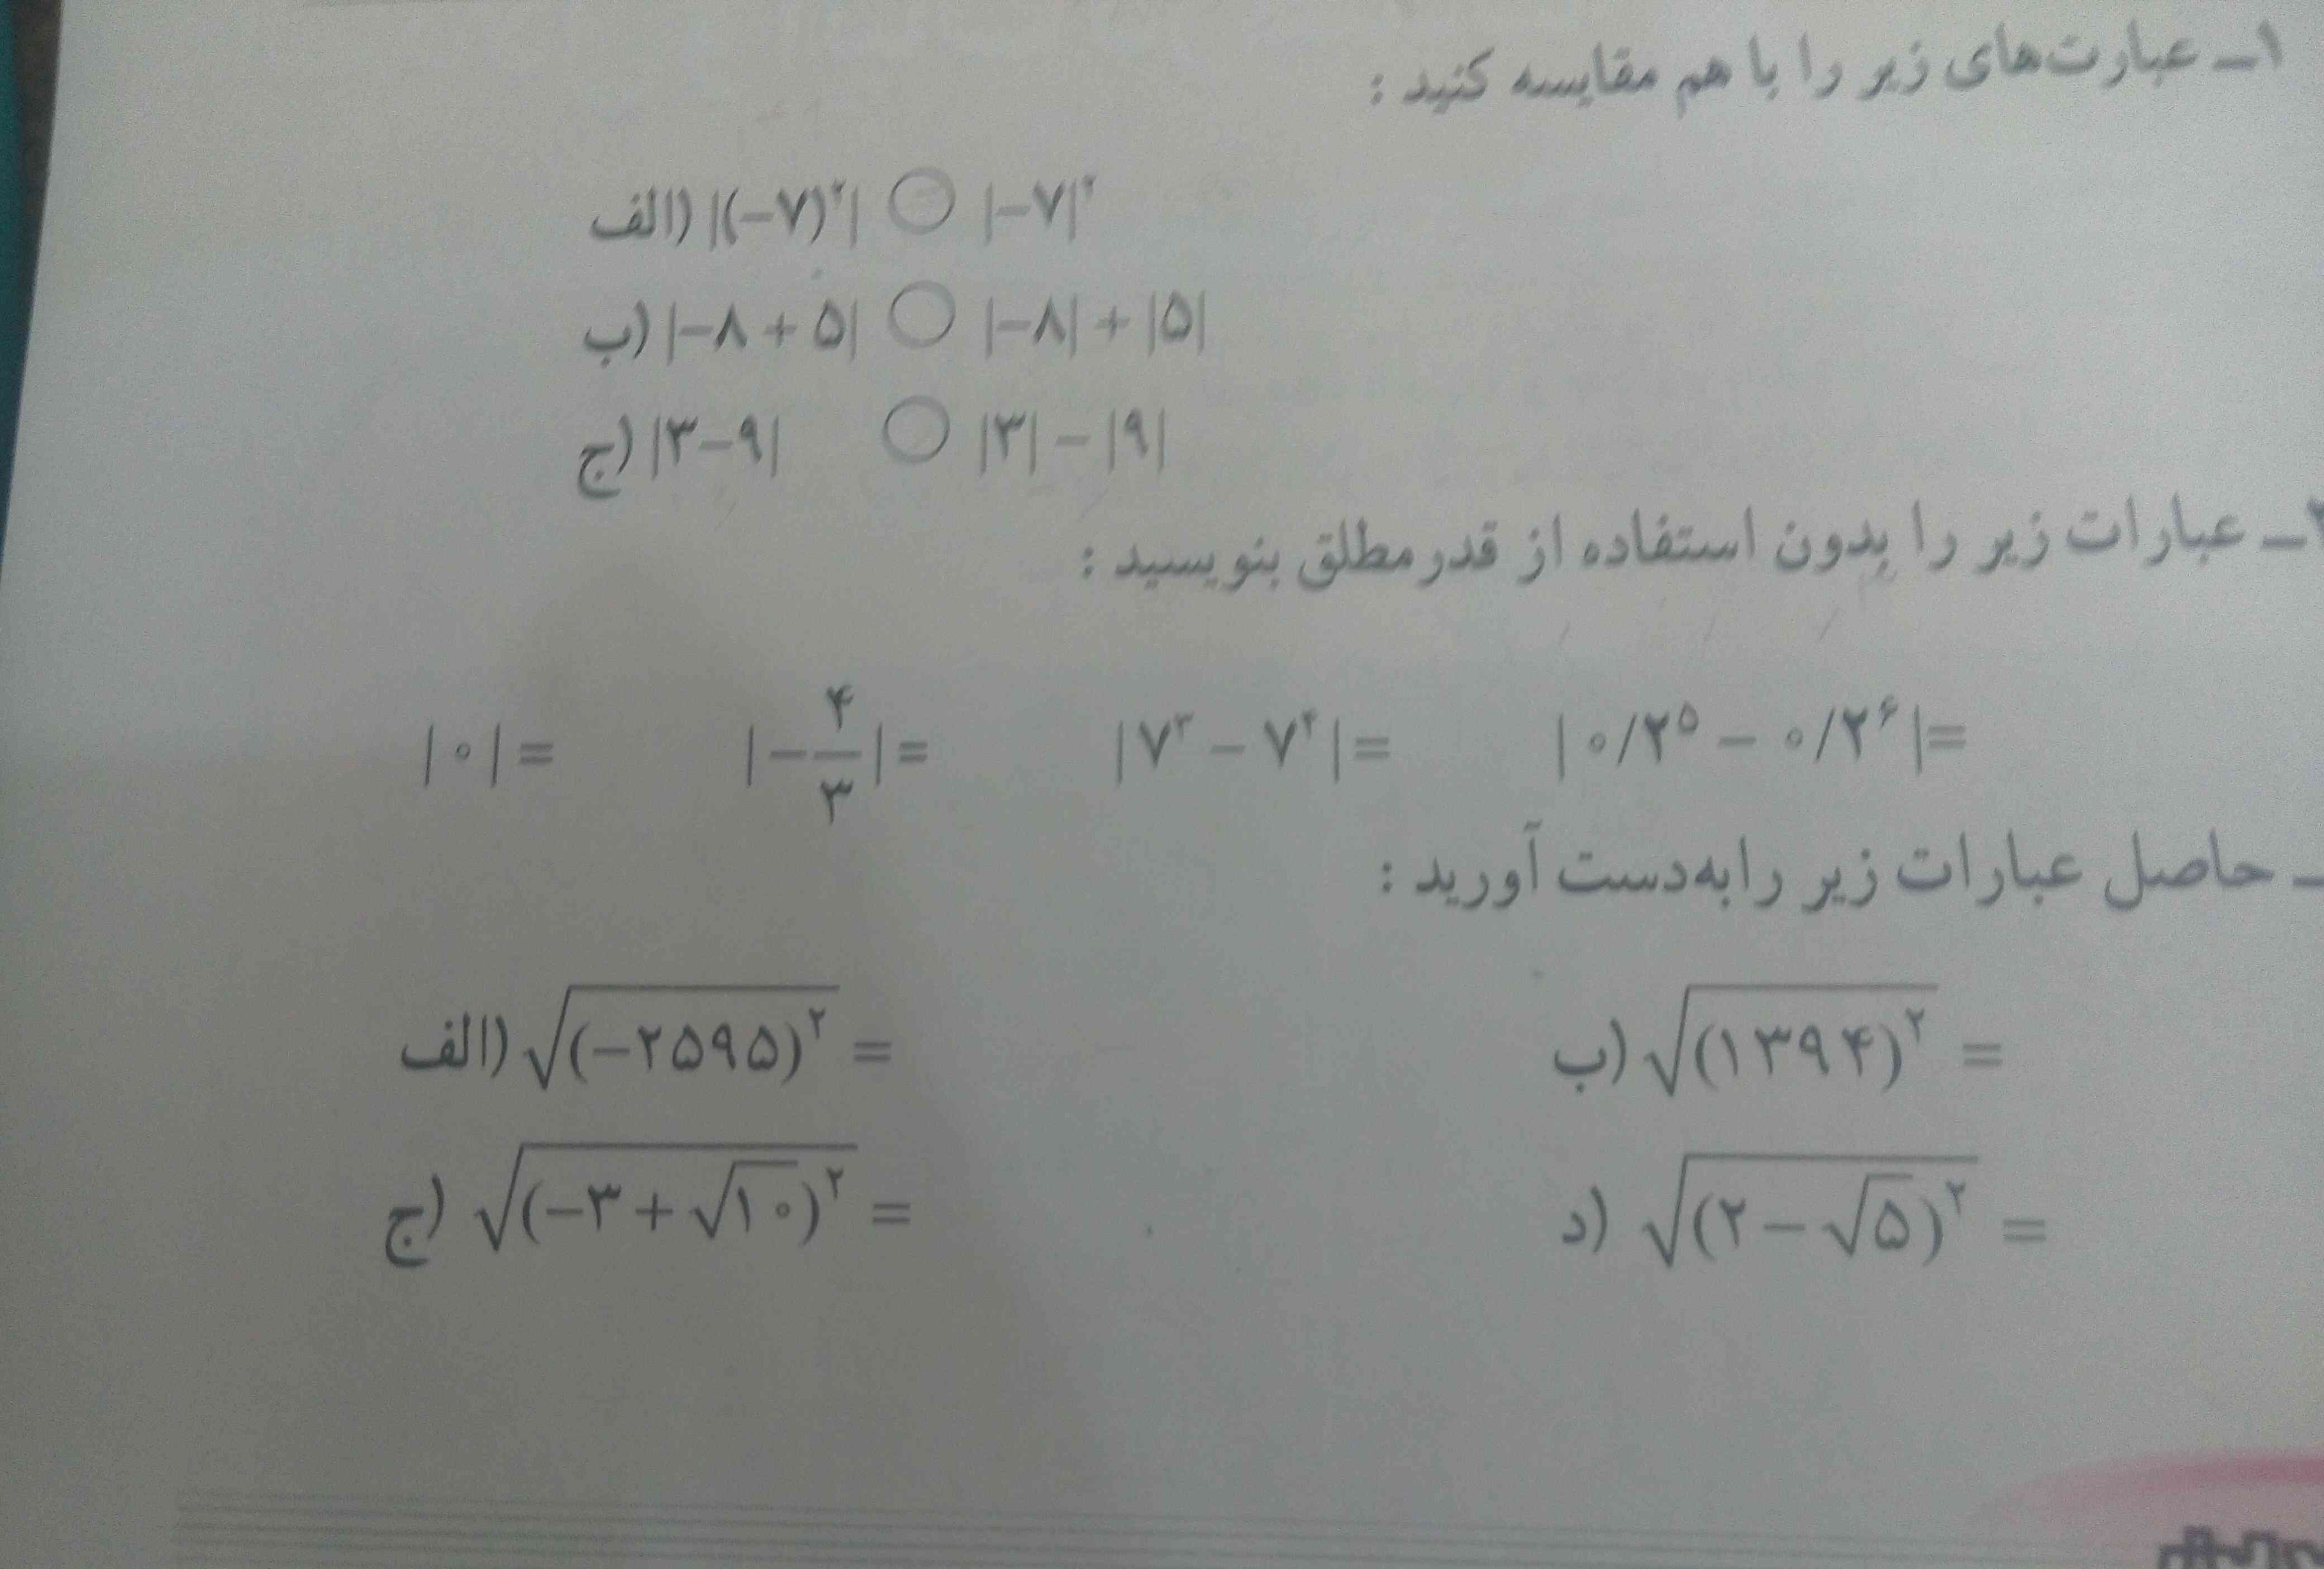 سلام دوستان میشه این سوالا ی کتاب ریاضی رو حل کنید برام با توضیح لطفا از پادرس نباشه جوابا مرسییییی عجله دارم خواهشا زودتر بازم ممنون